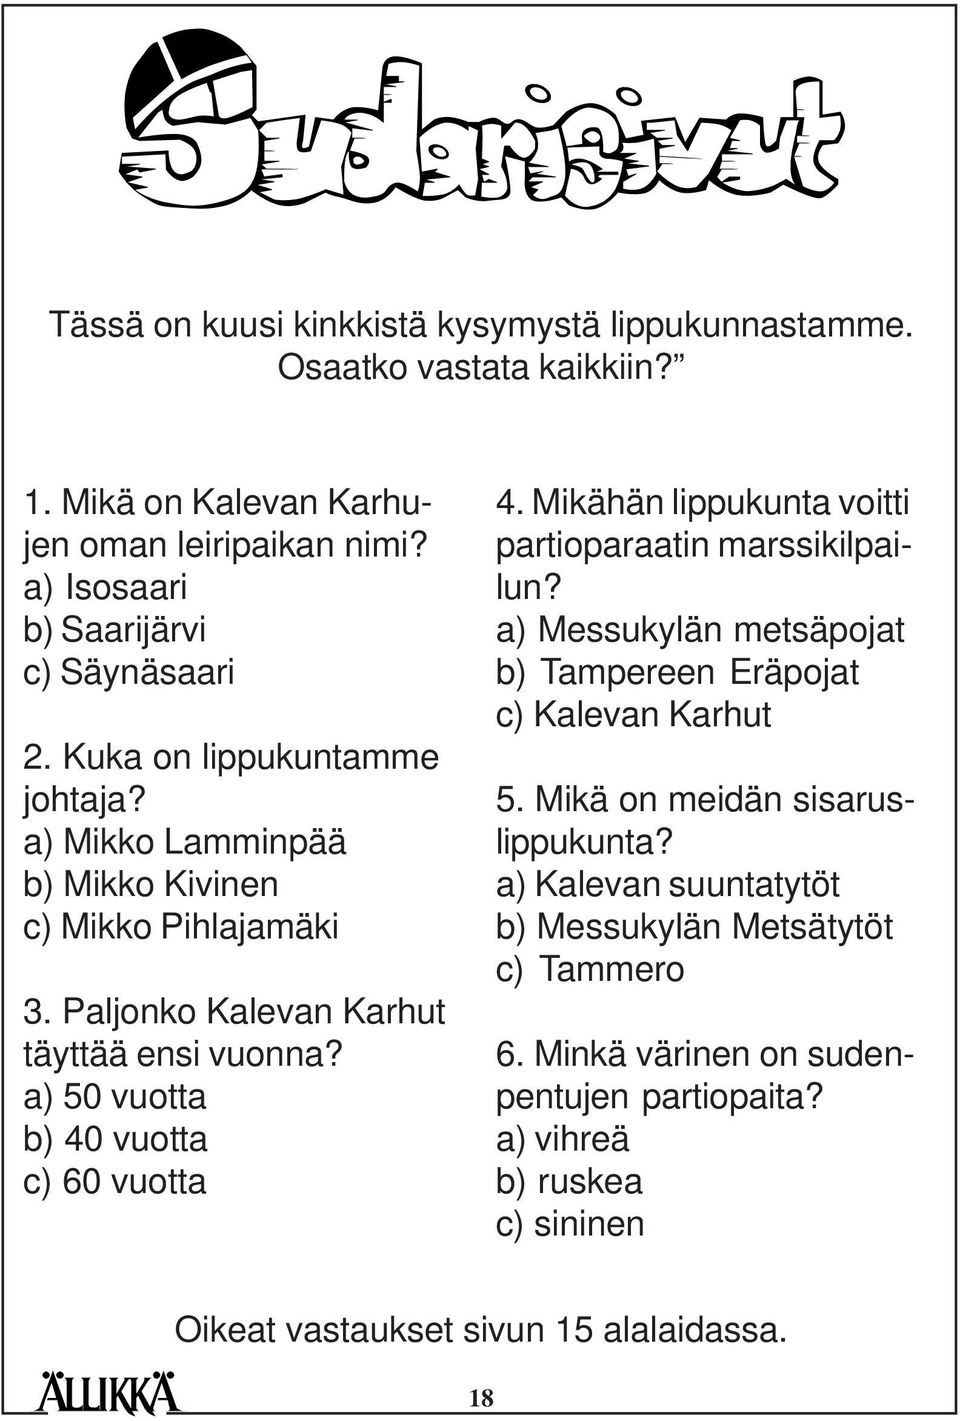 a) 50 vuotta b) 40 vuotta c) 60 vuotta 4. Mikähän lippukunta voitti partioparaatin marssikilpailun? a) Messukylän metsäpojat b) Tampereen Eräpojat c) Kalevan Karhut 5.